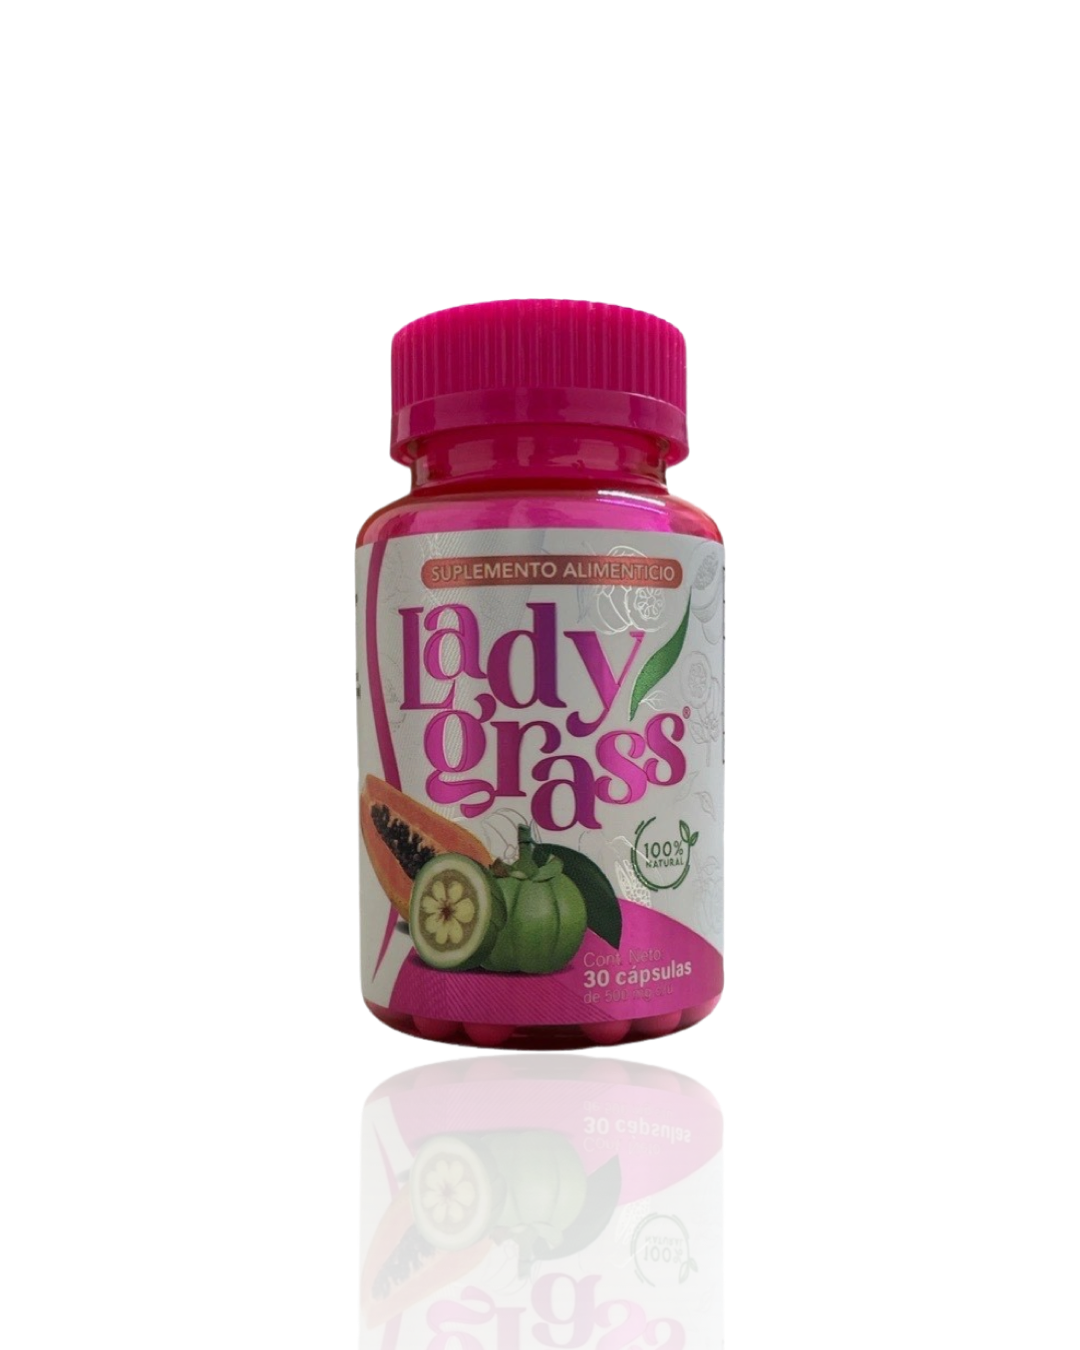 Lady grass 30 cápsulas, Auxiliar en los tratamientos para el control de peso.